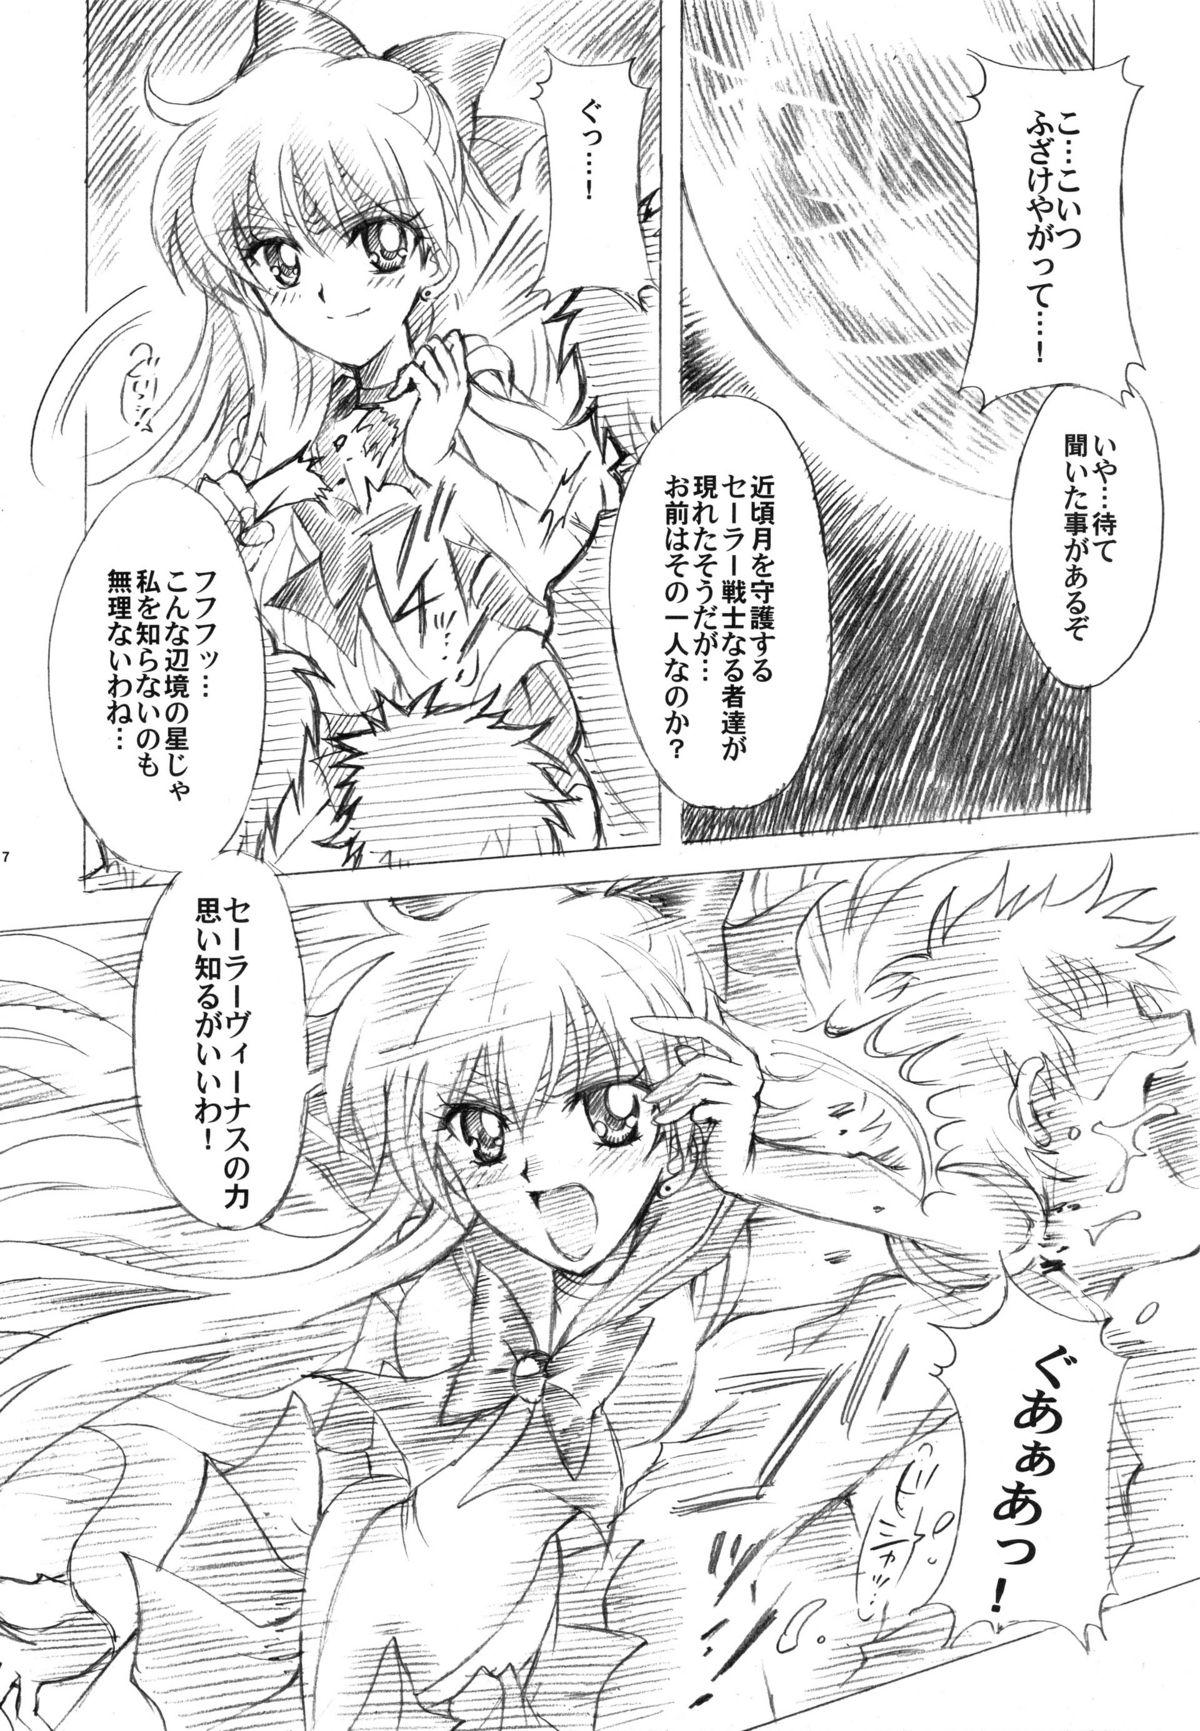 Blowjobs Gisei to Inori wo... - Sailor moon Bbw - Page 7